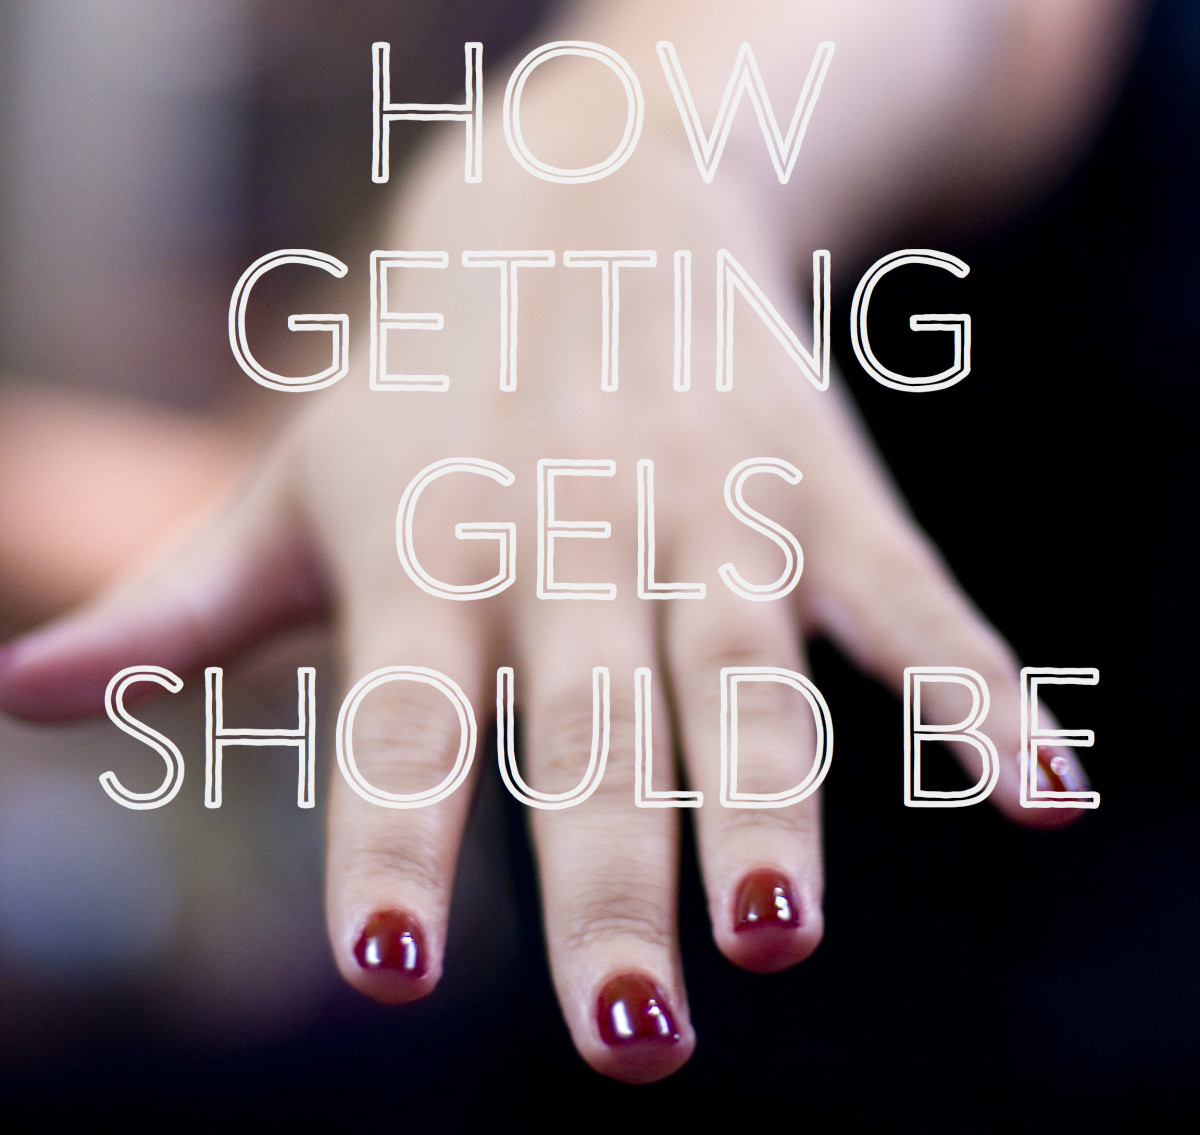 gel-nails-should-not-hurt